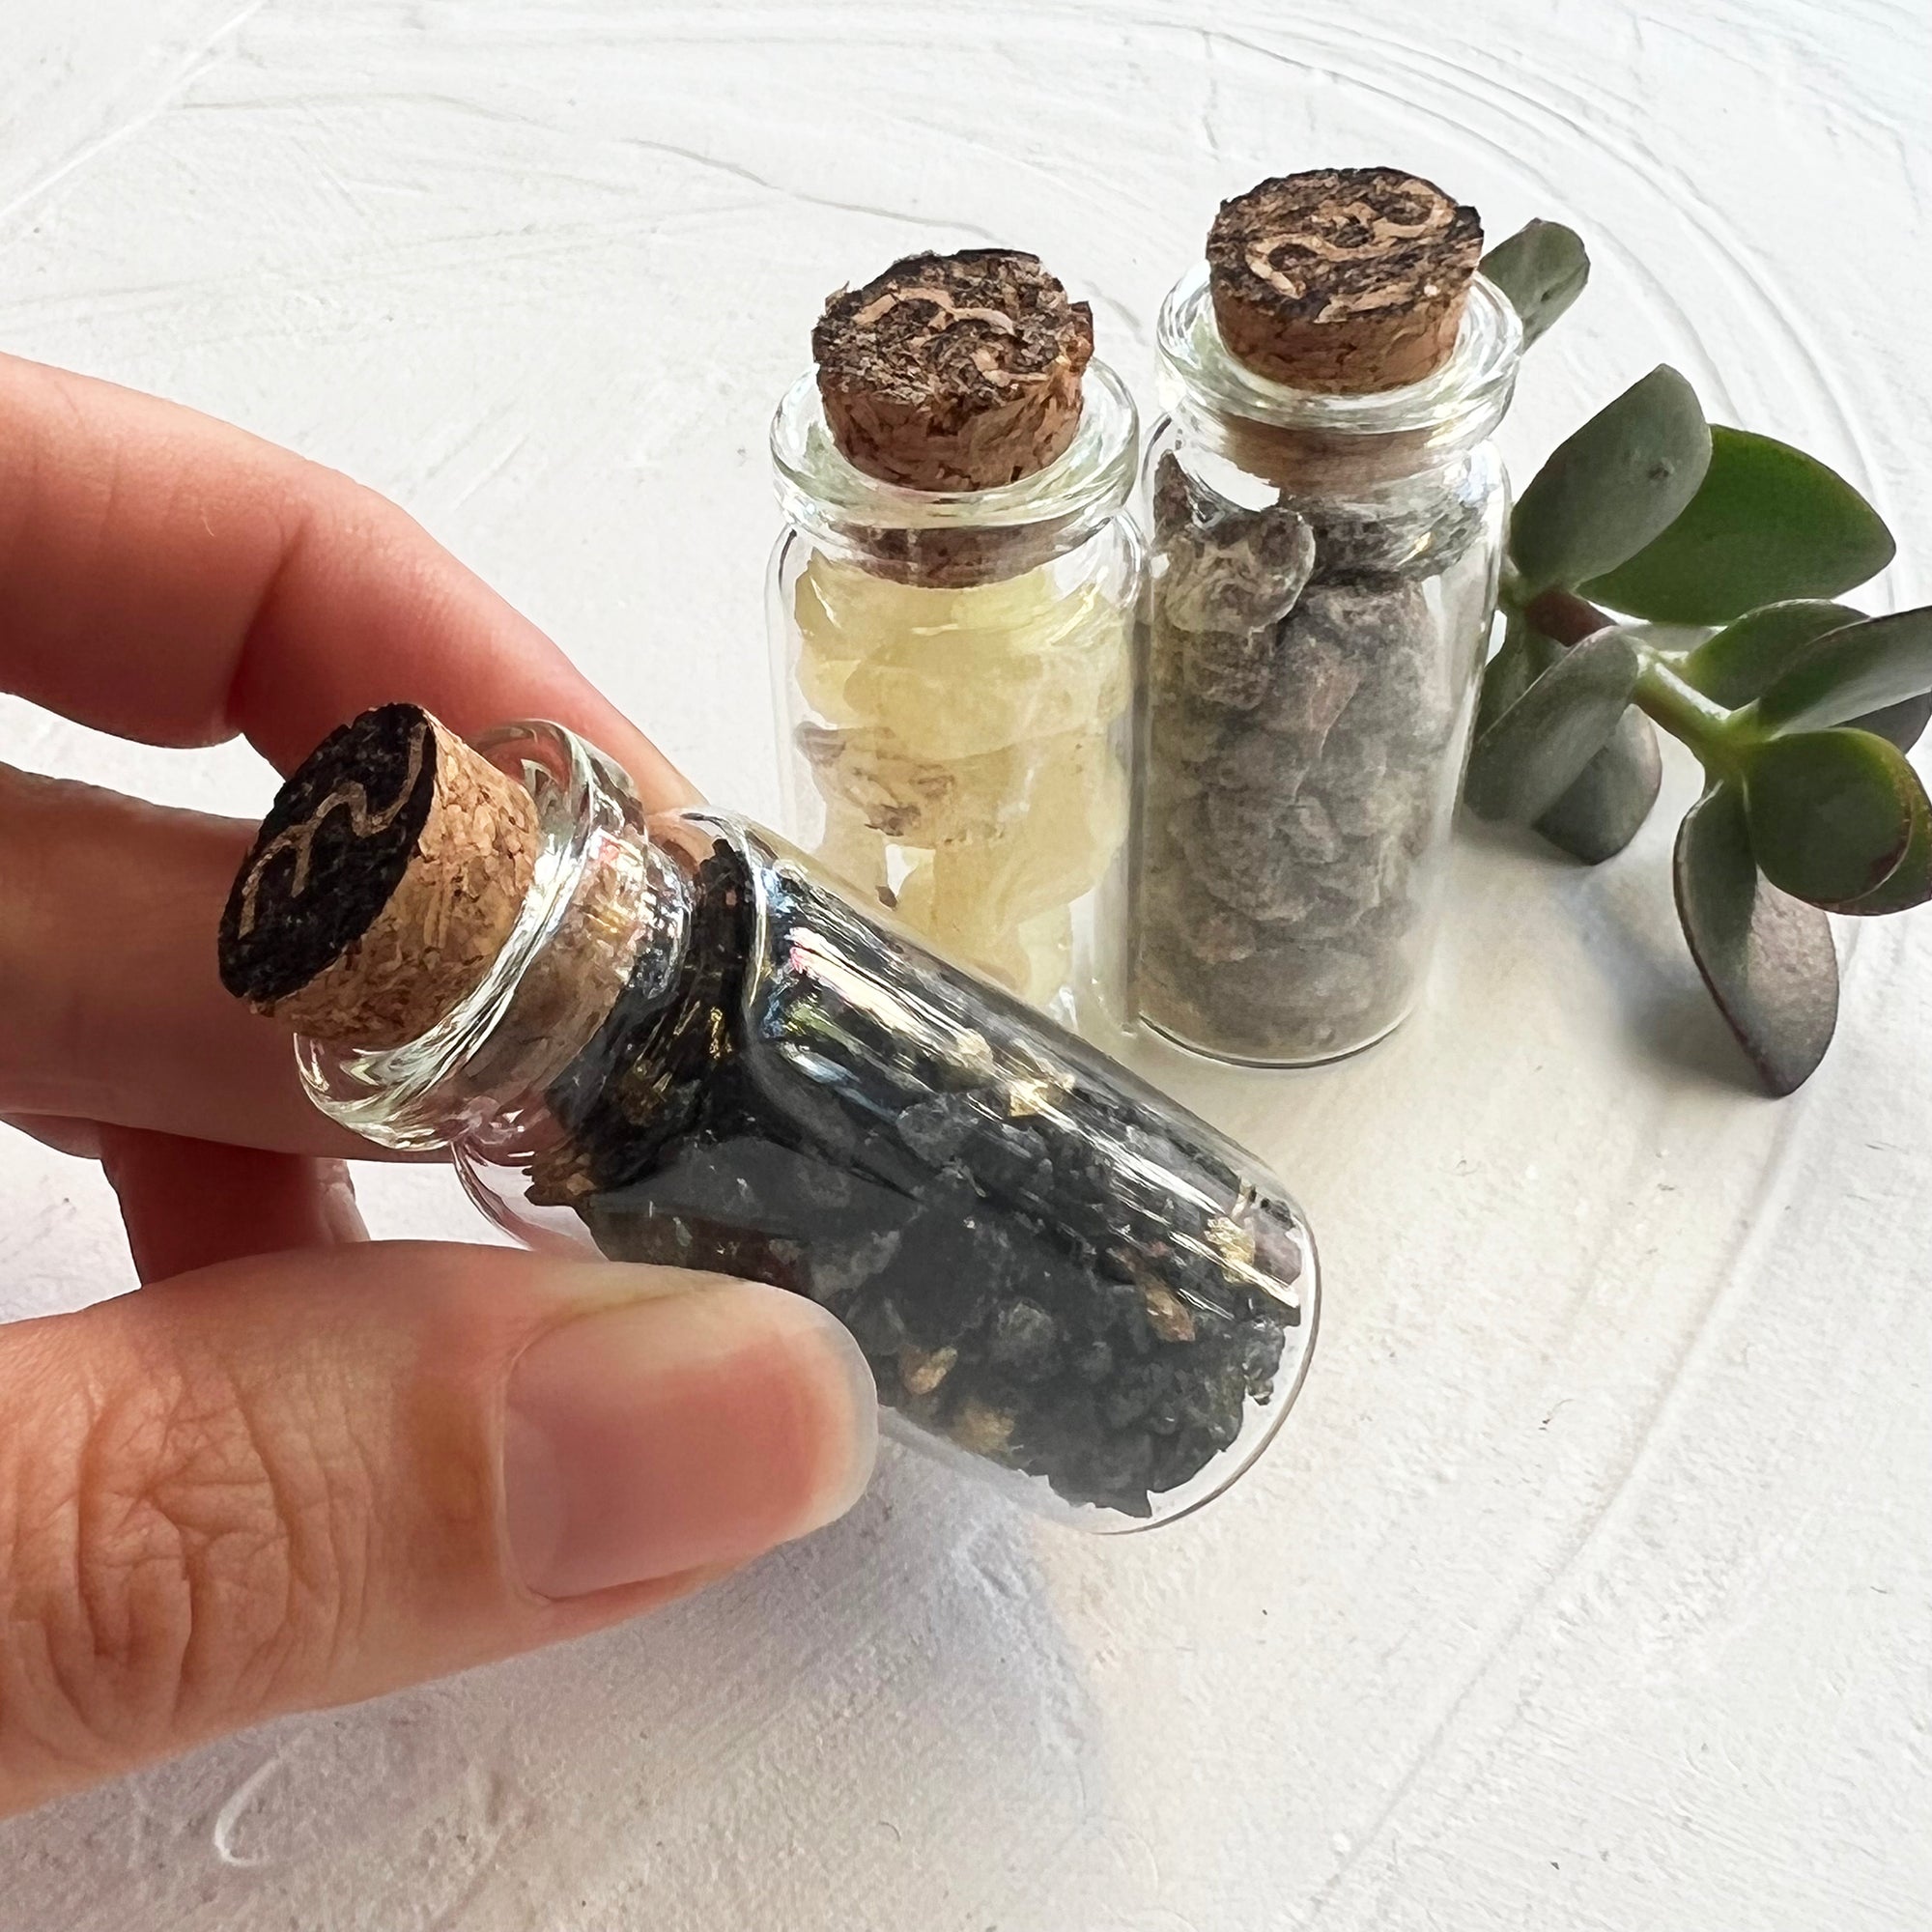 Resin Incense Sampler Pack - Set of 8